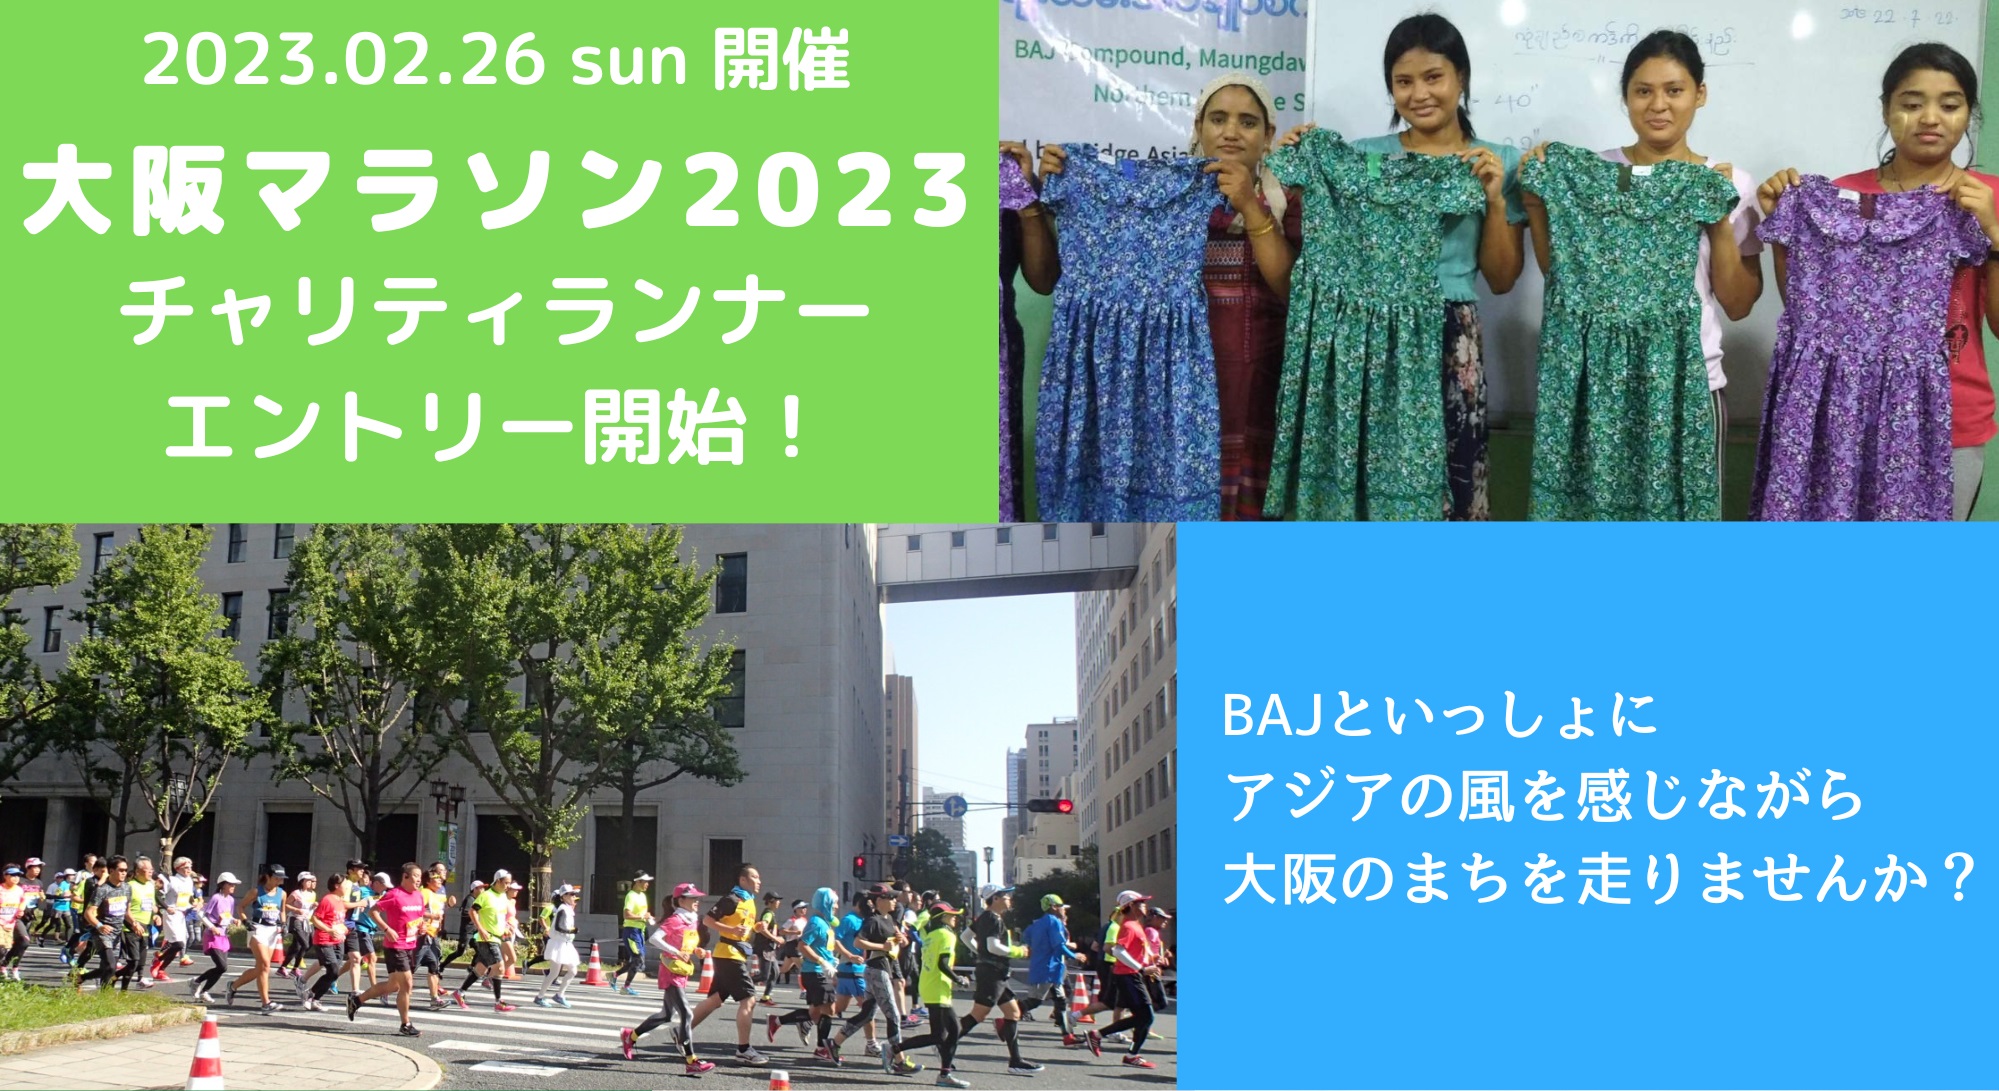 大阪マラソン2023 チャリティランナー募集のお知らせ